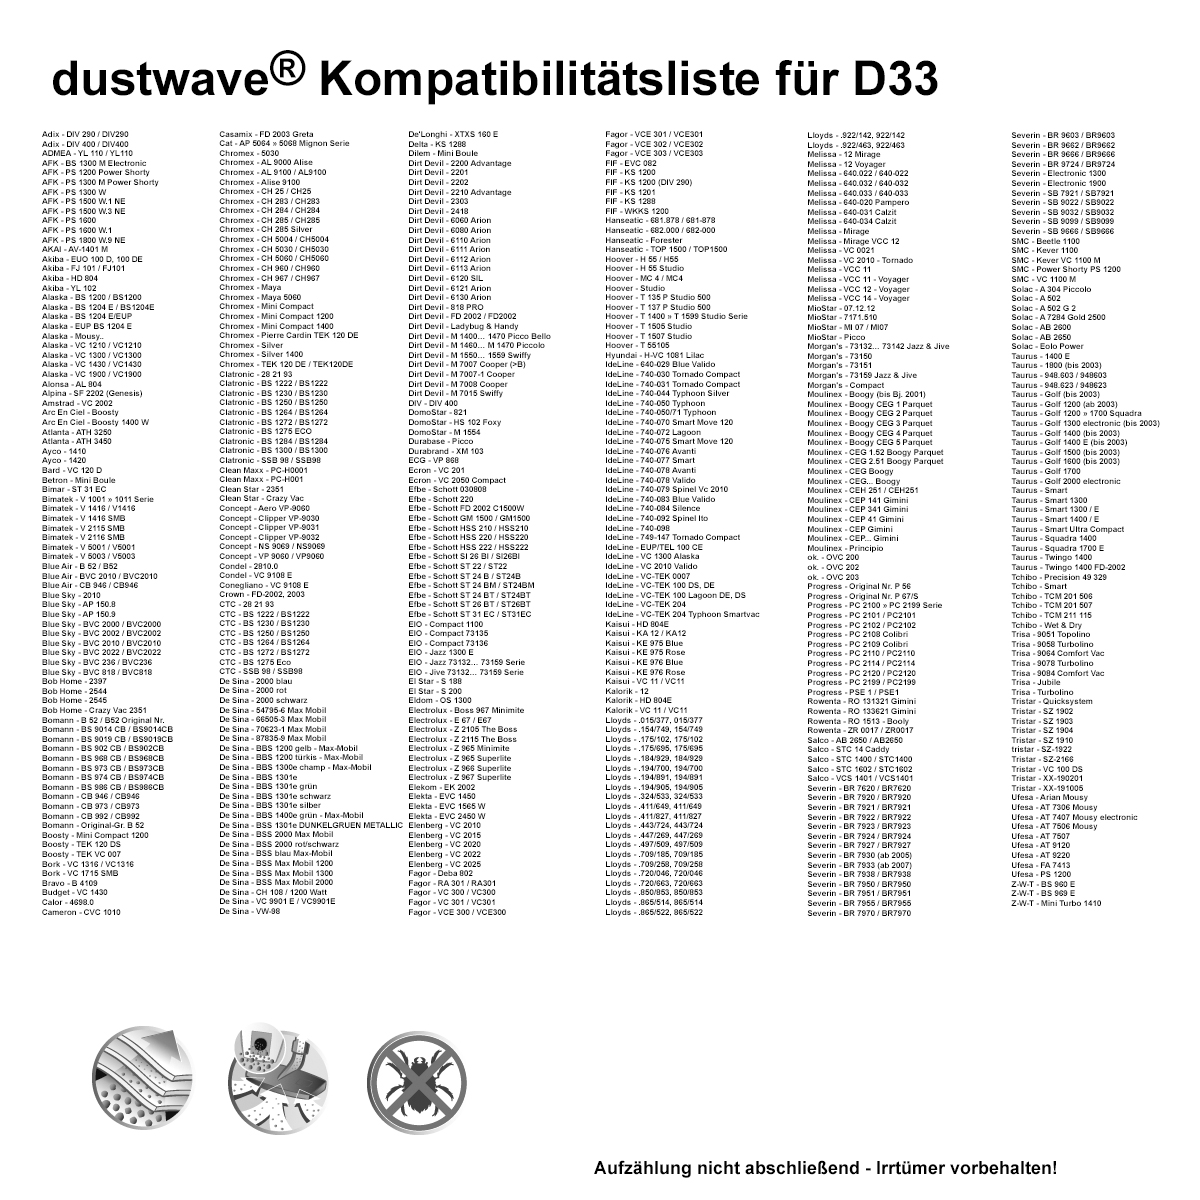 Dustwave® 20 Staubsaugerbeutel für Hoover T1505 Studio - hocheffizient, mehrlagiges Mikrovlies mit Hygieneverschluss - Made in Germany